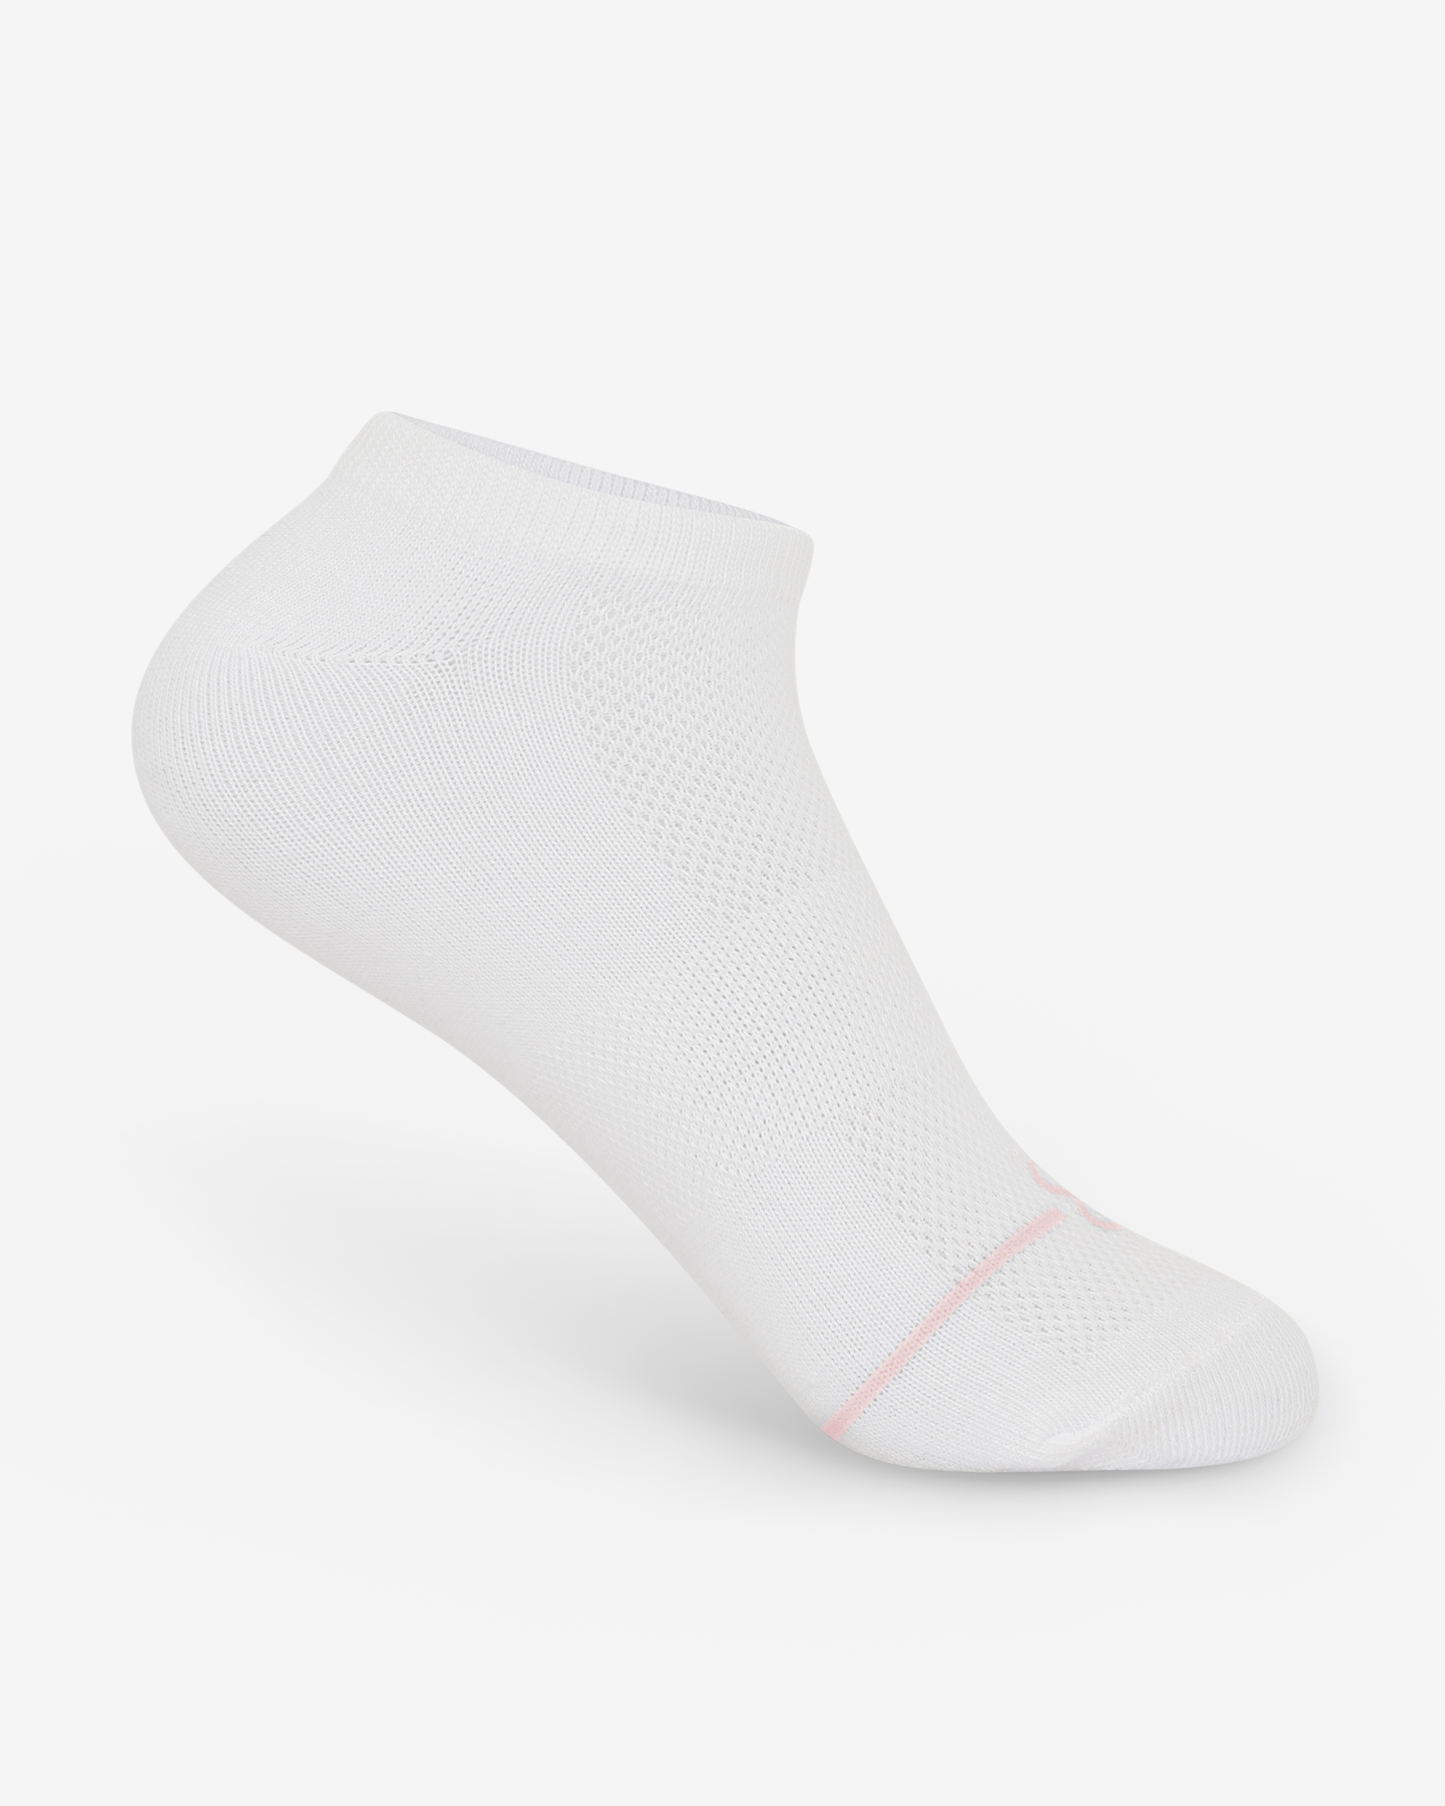 Ankle Training Socks (20-Pack)